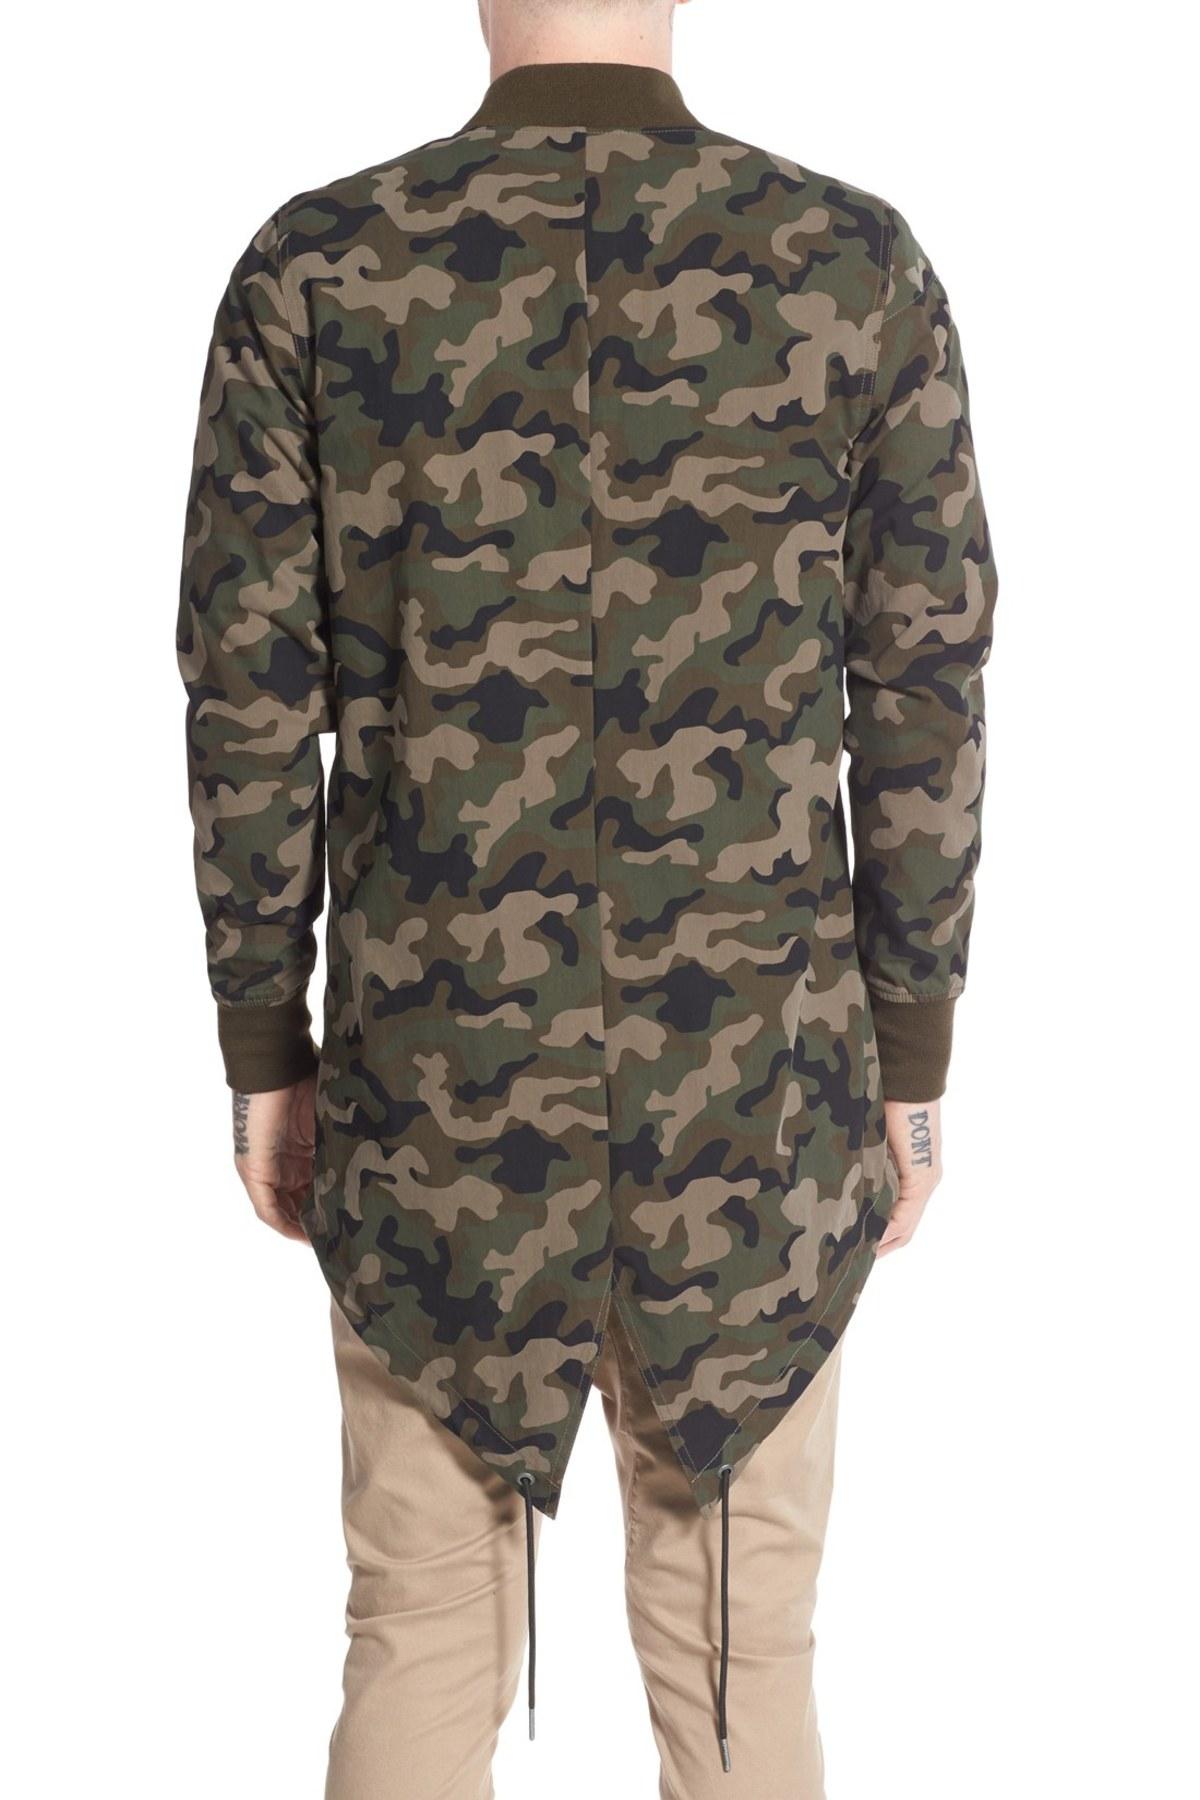 Zanerobe Cotton 'a-ten' Longline Fishtail Bomber Jacket for Men - Lyst